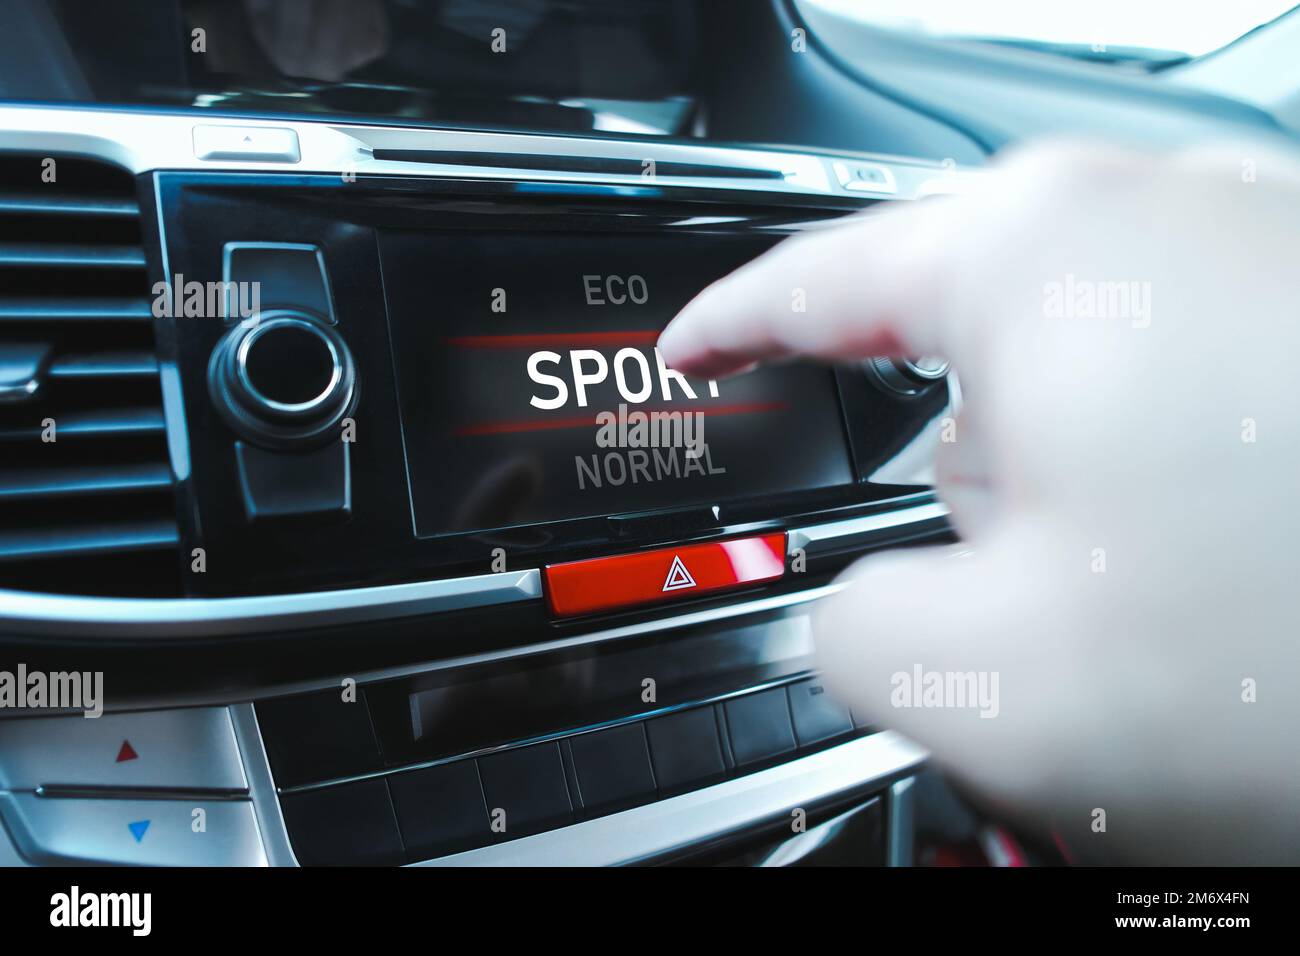 Der Fahrer wählt manuell einen Fahrmodus auf einem Touchscreen-Display in einem Fahrzeug aus. Stockfoto